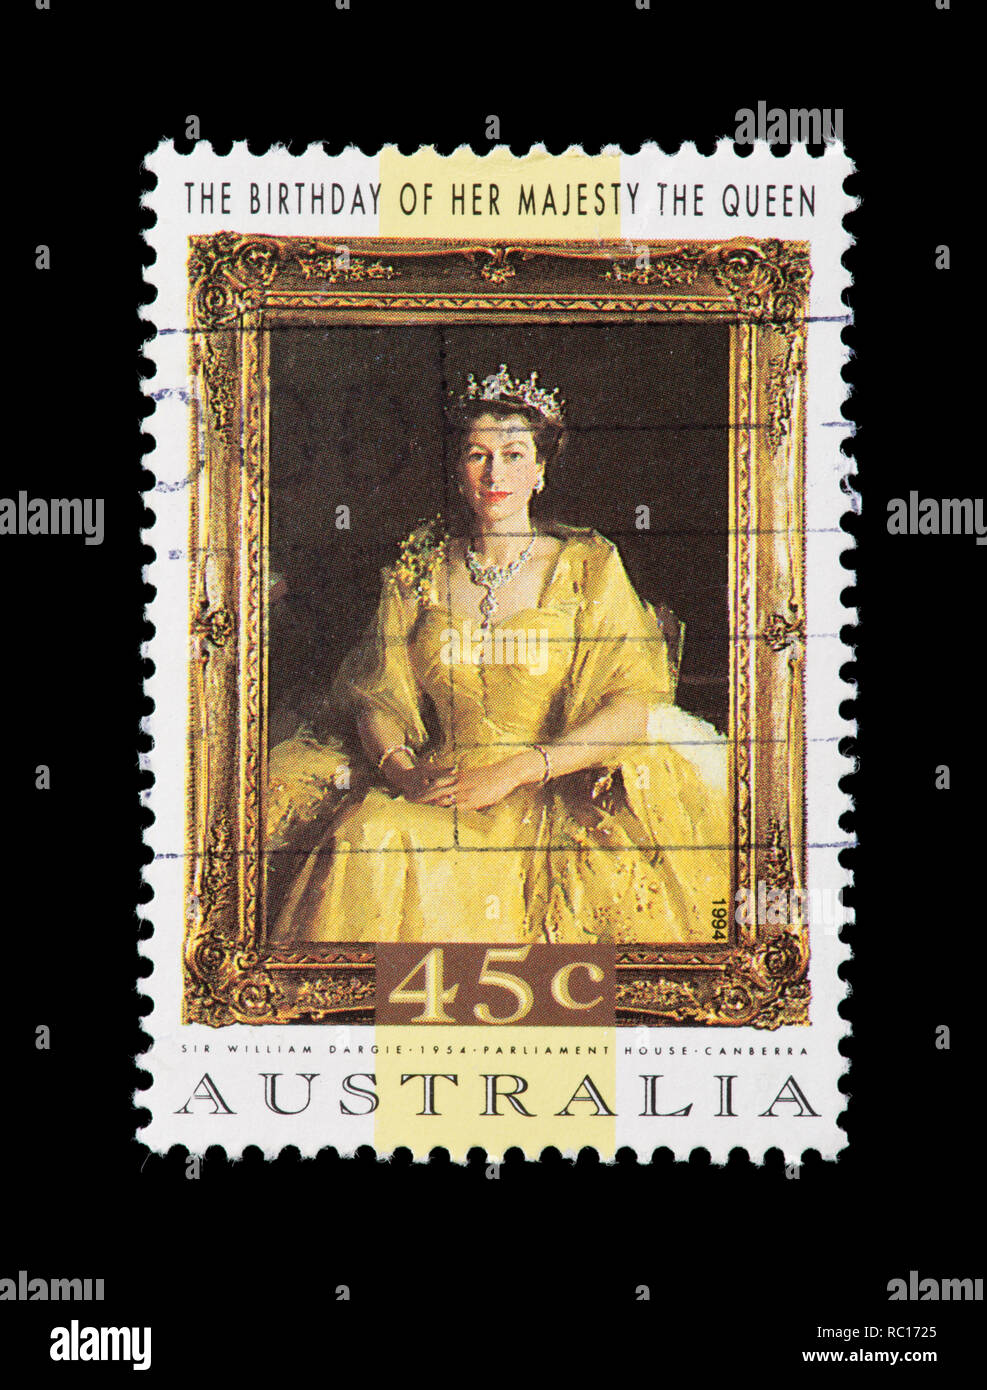 Francobollo da Australia raffigurante la regina Elisabetta II per il suo 68 esimo compleanno Foto Stock